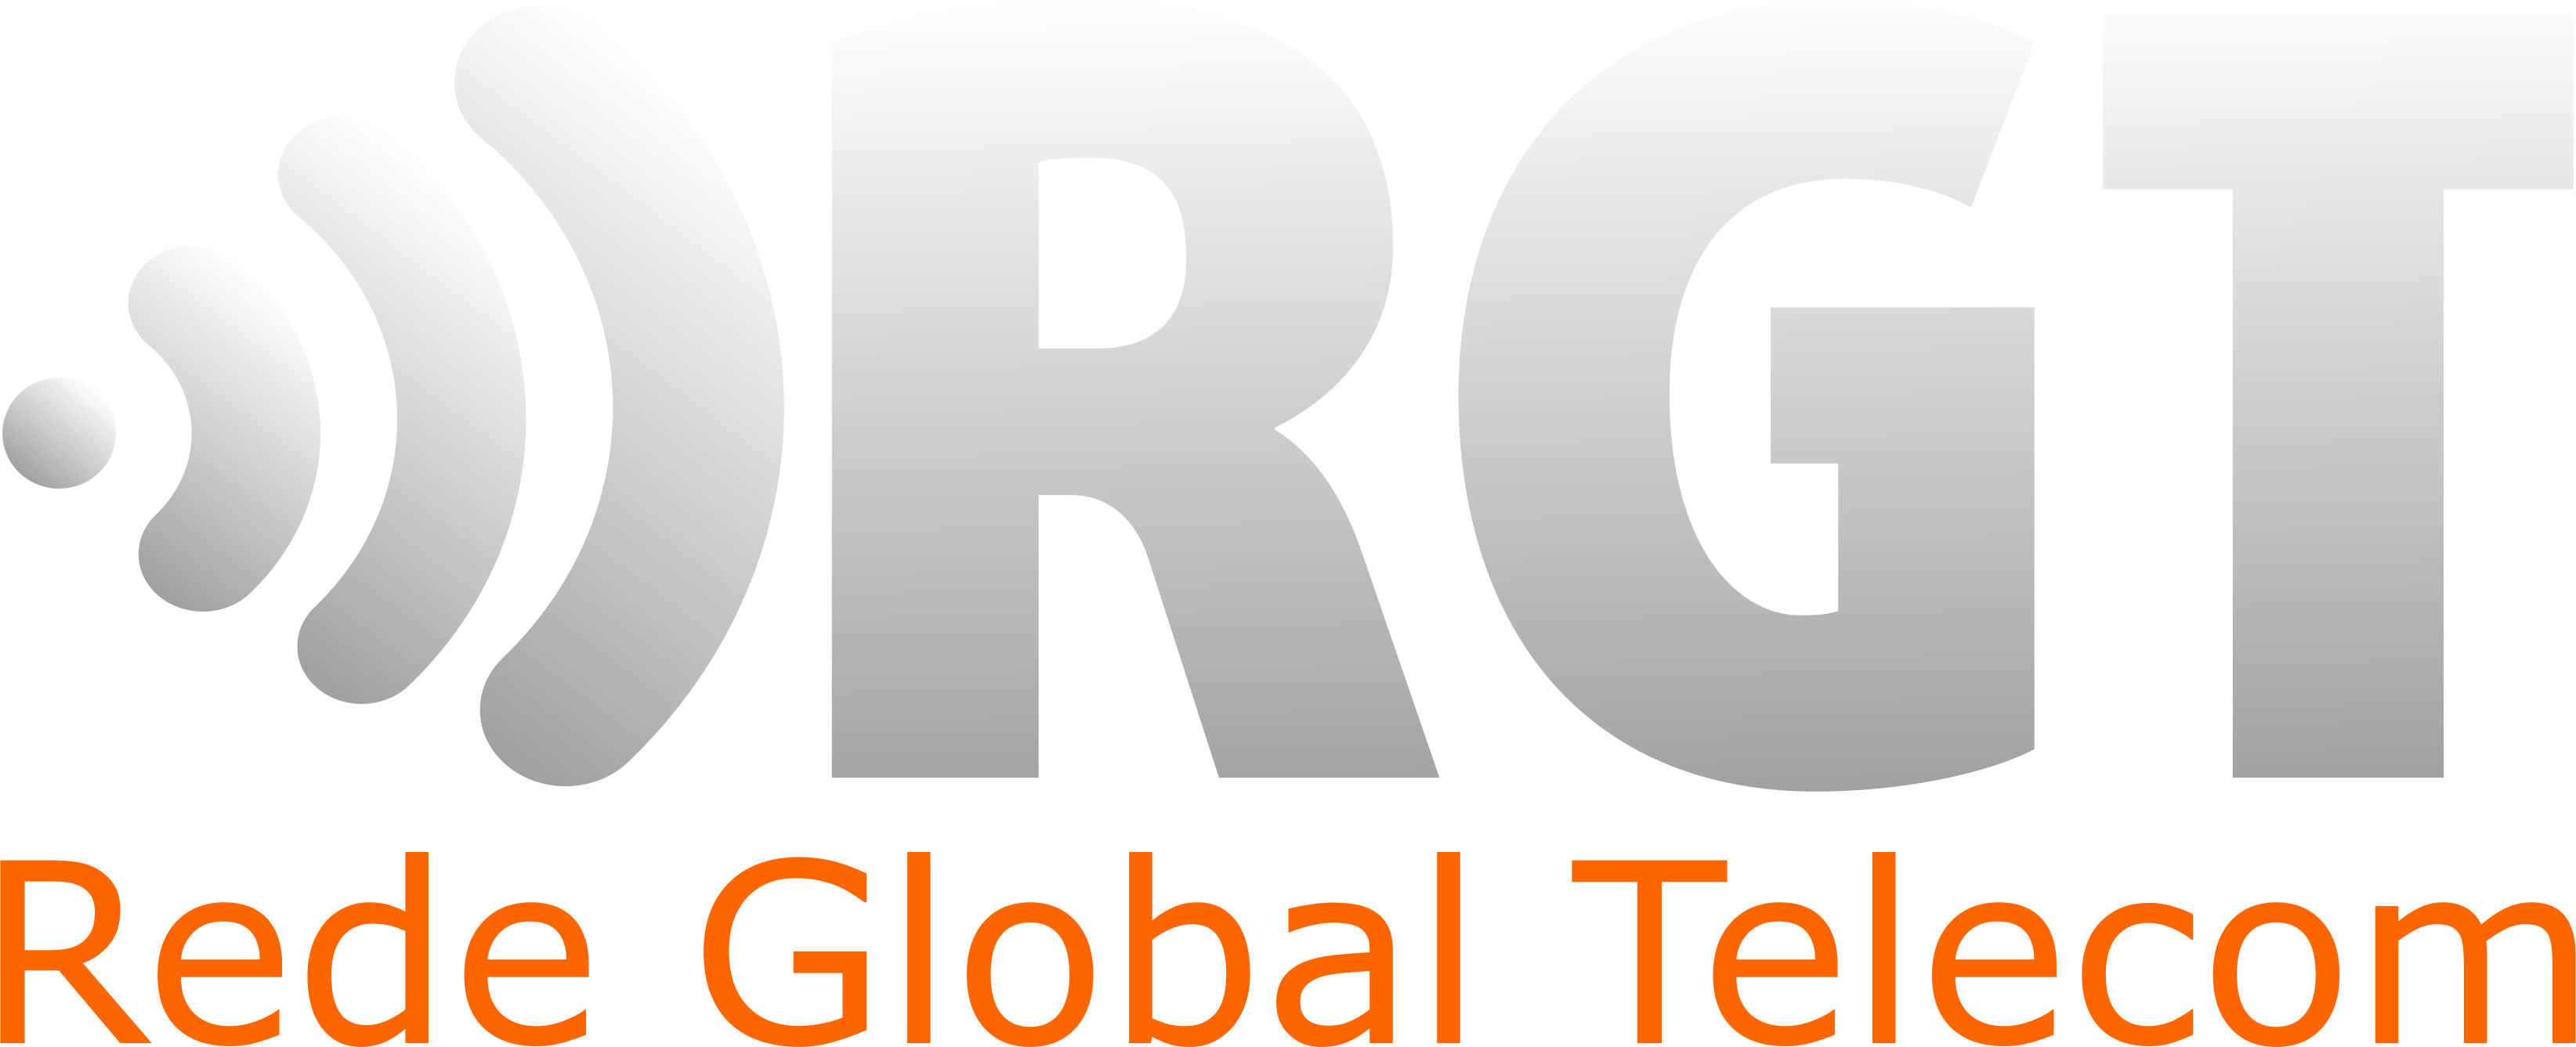 Logo - Rede Global Telecom